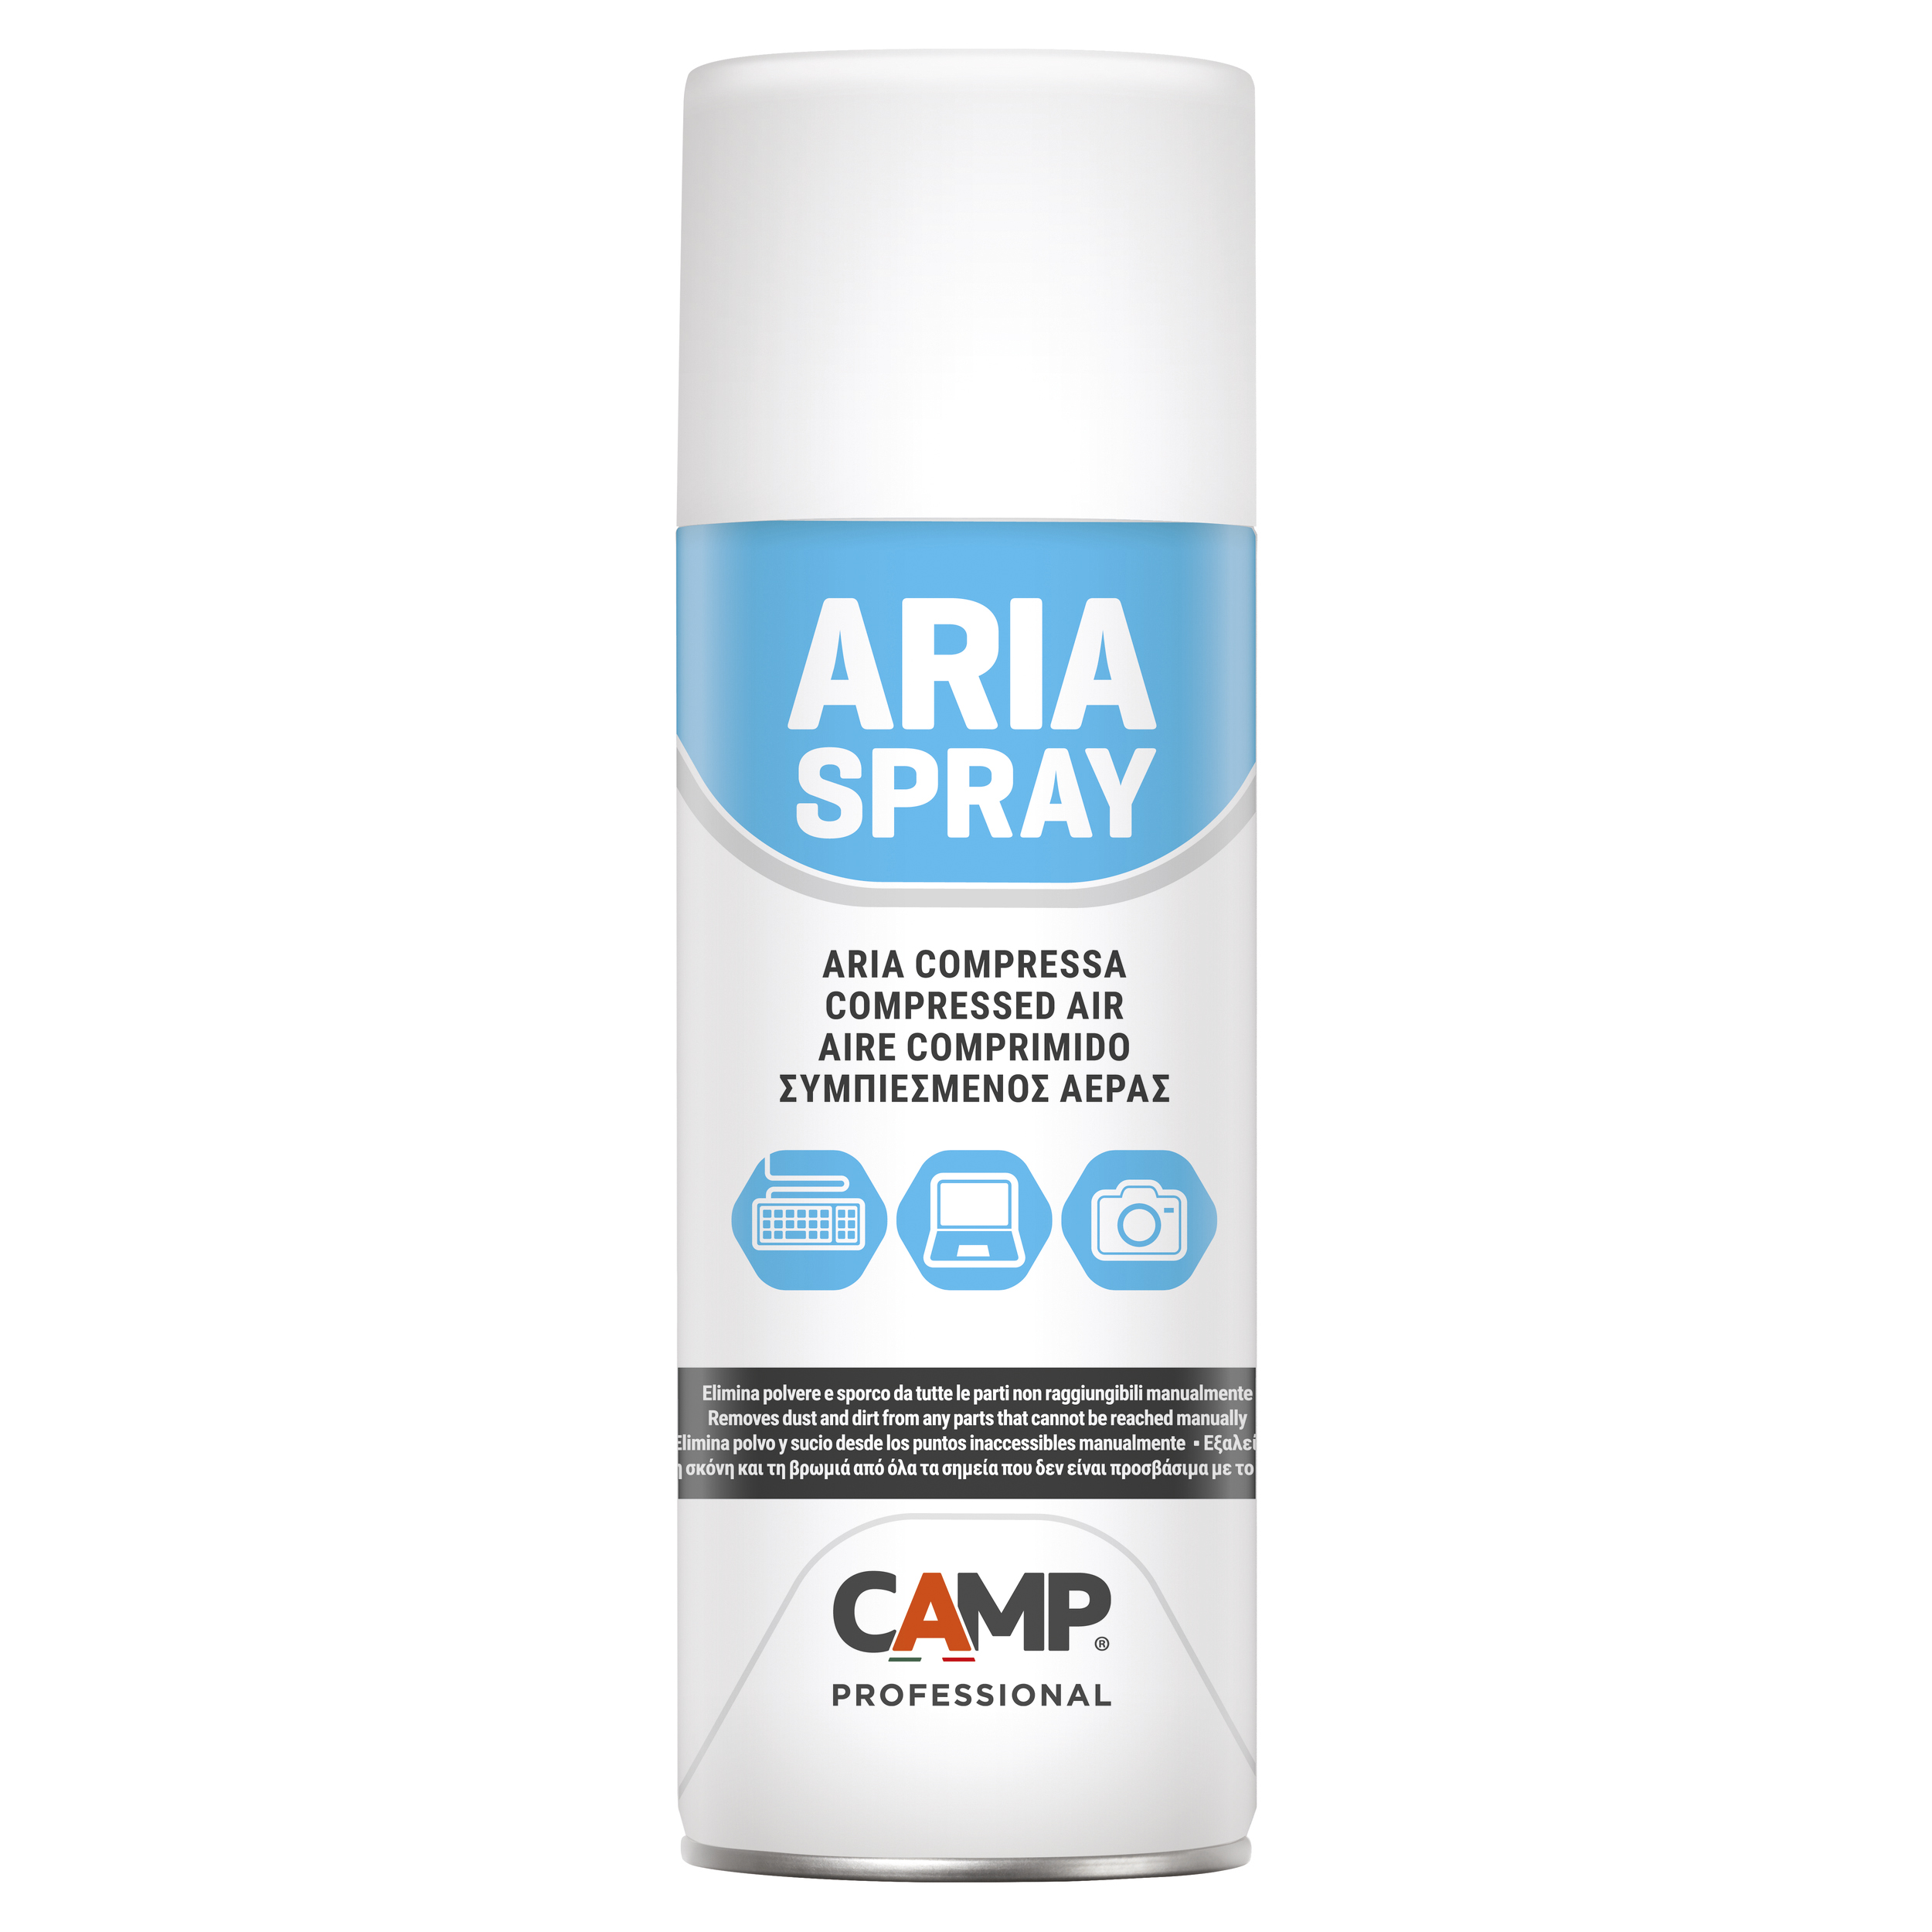 CAMP Aire comprimido en spray ARIA SPRAY